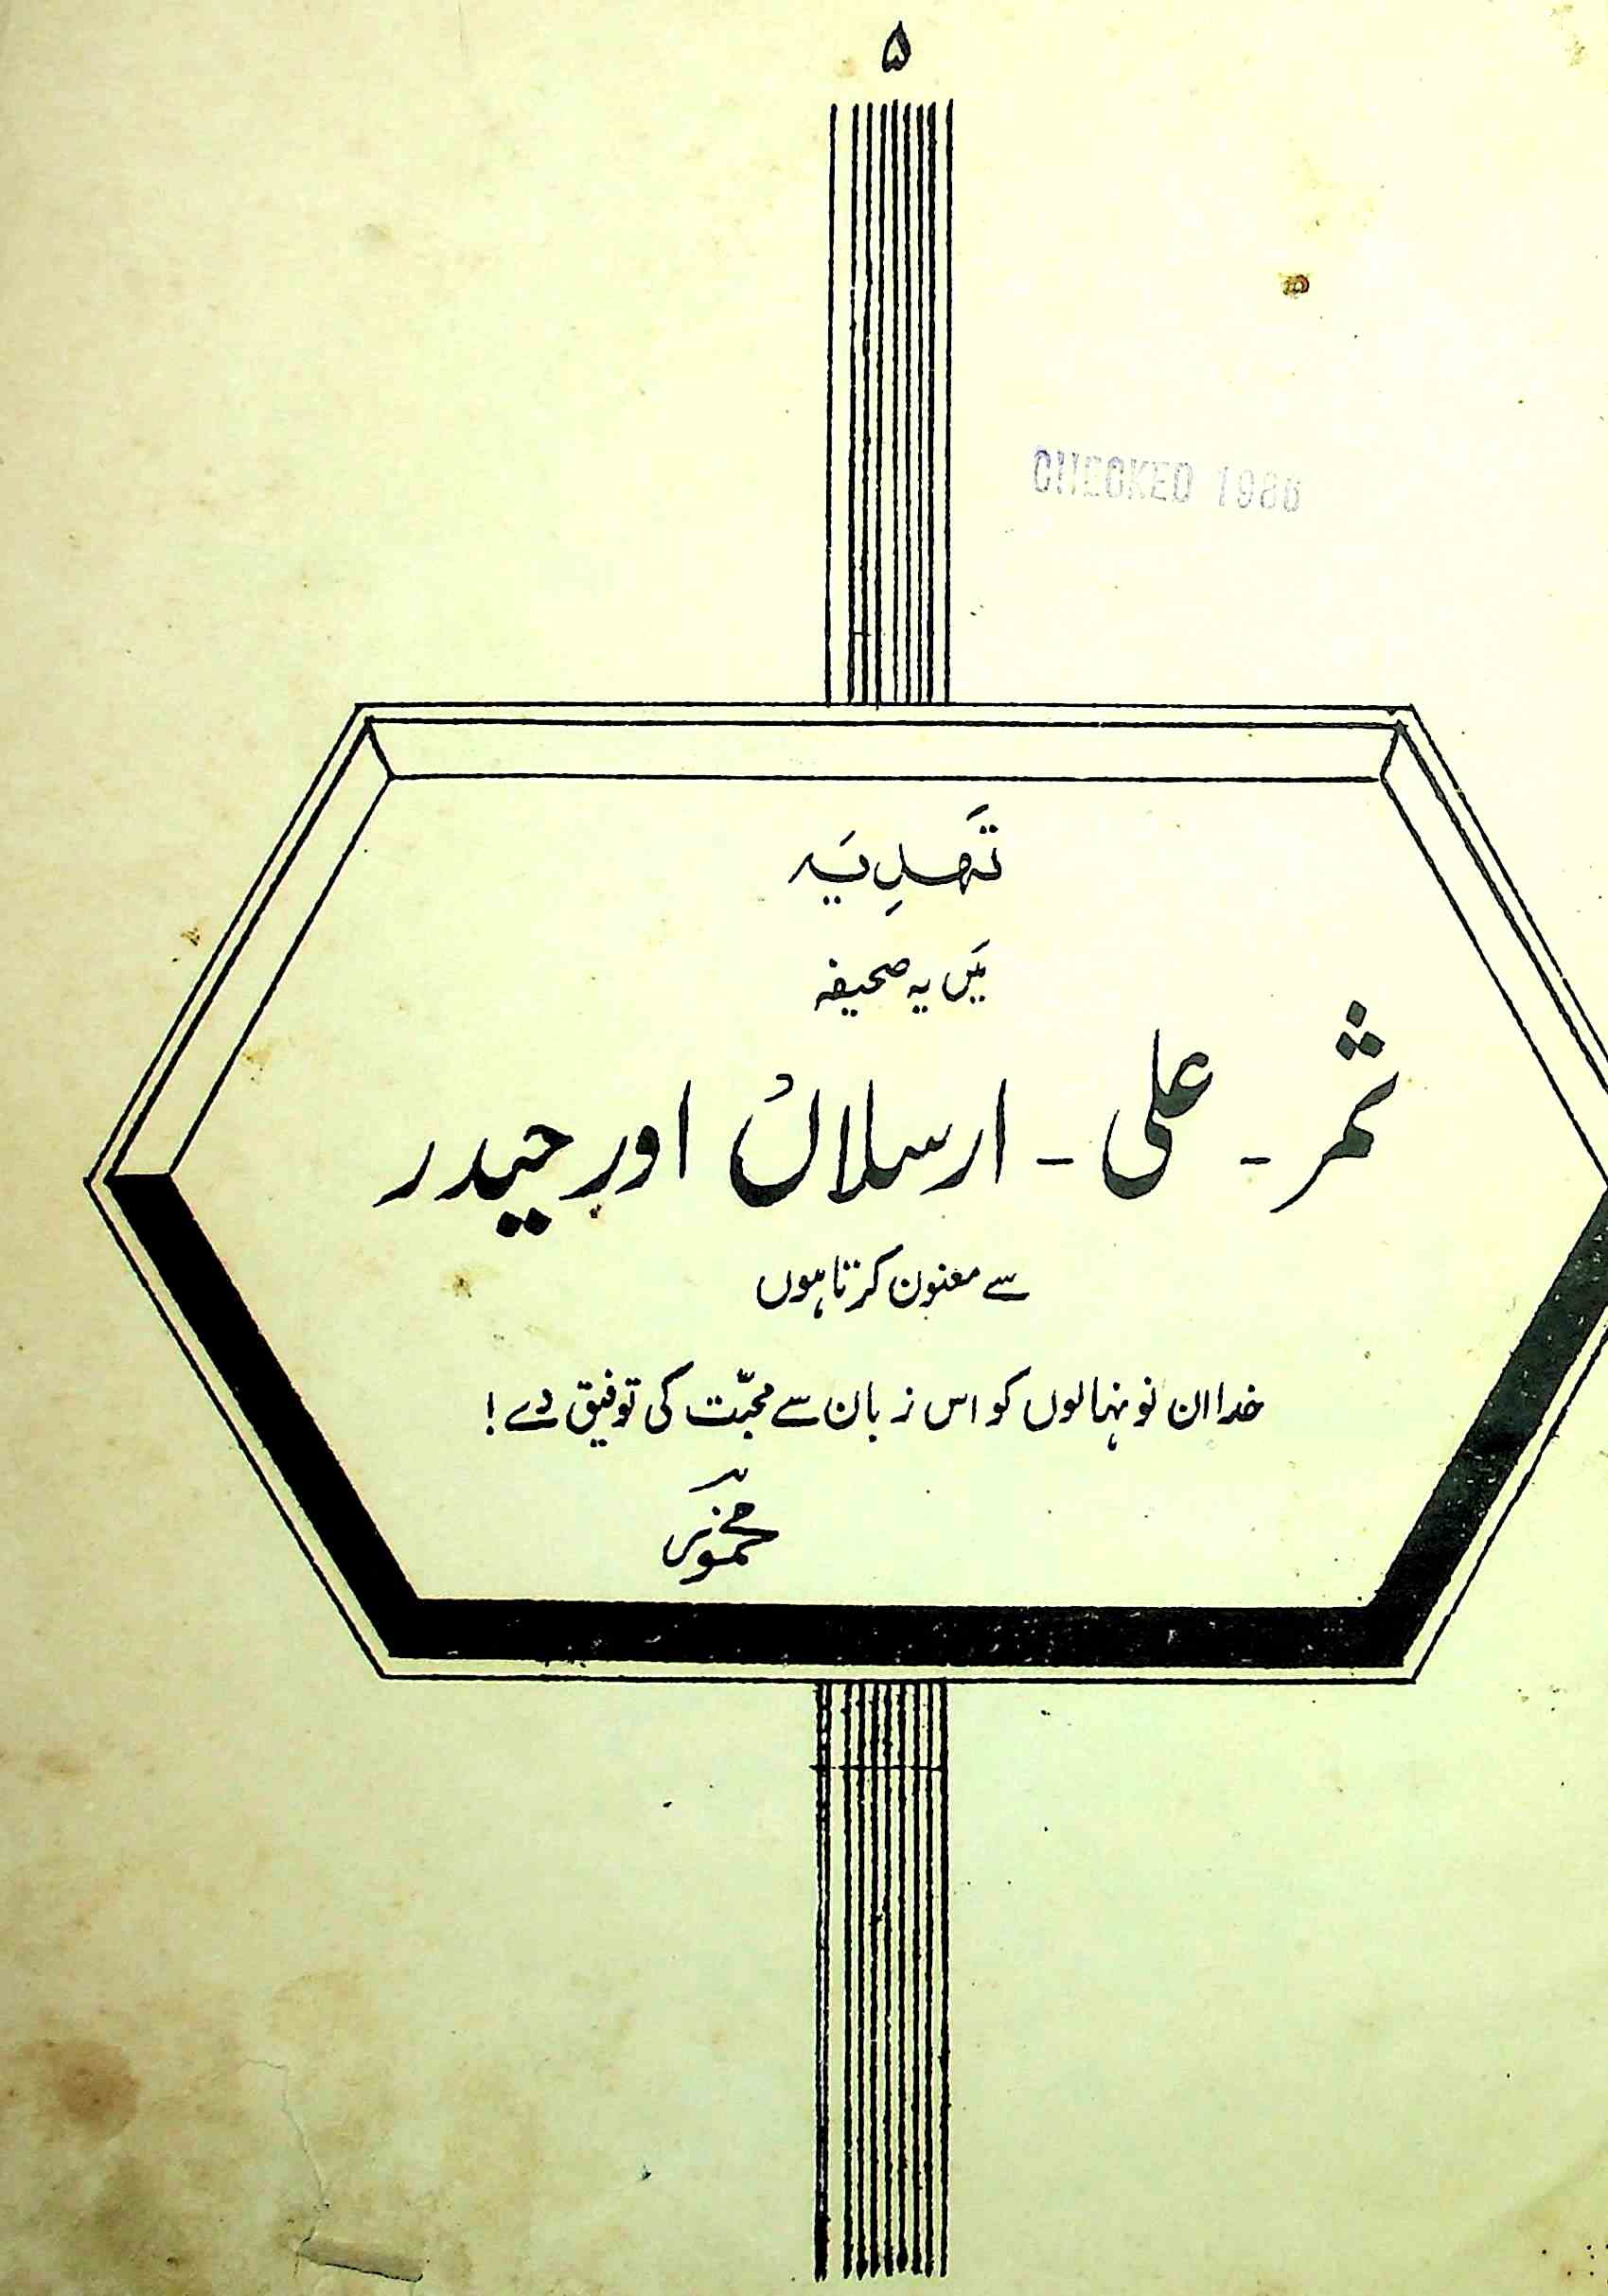 اردو زبان اور اسالیب